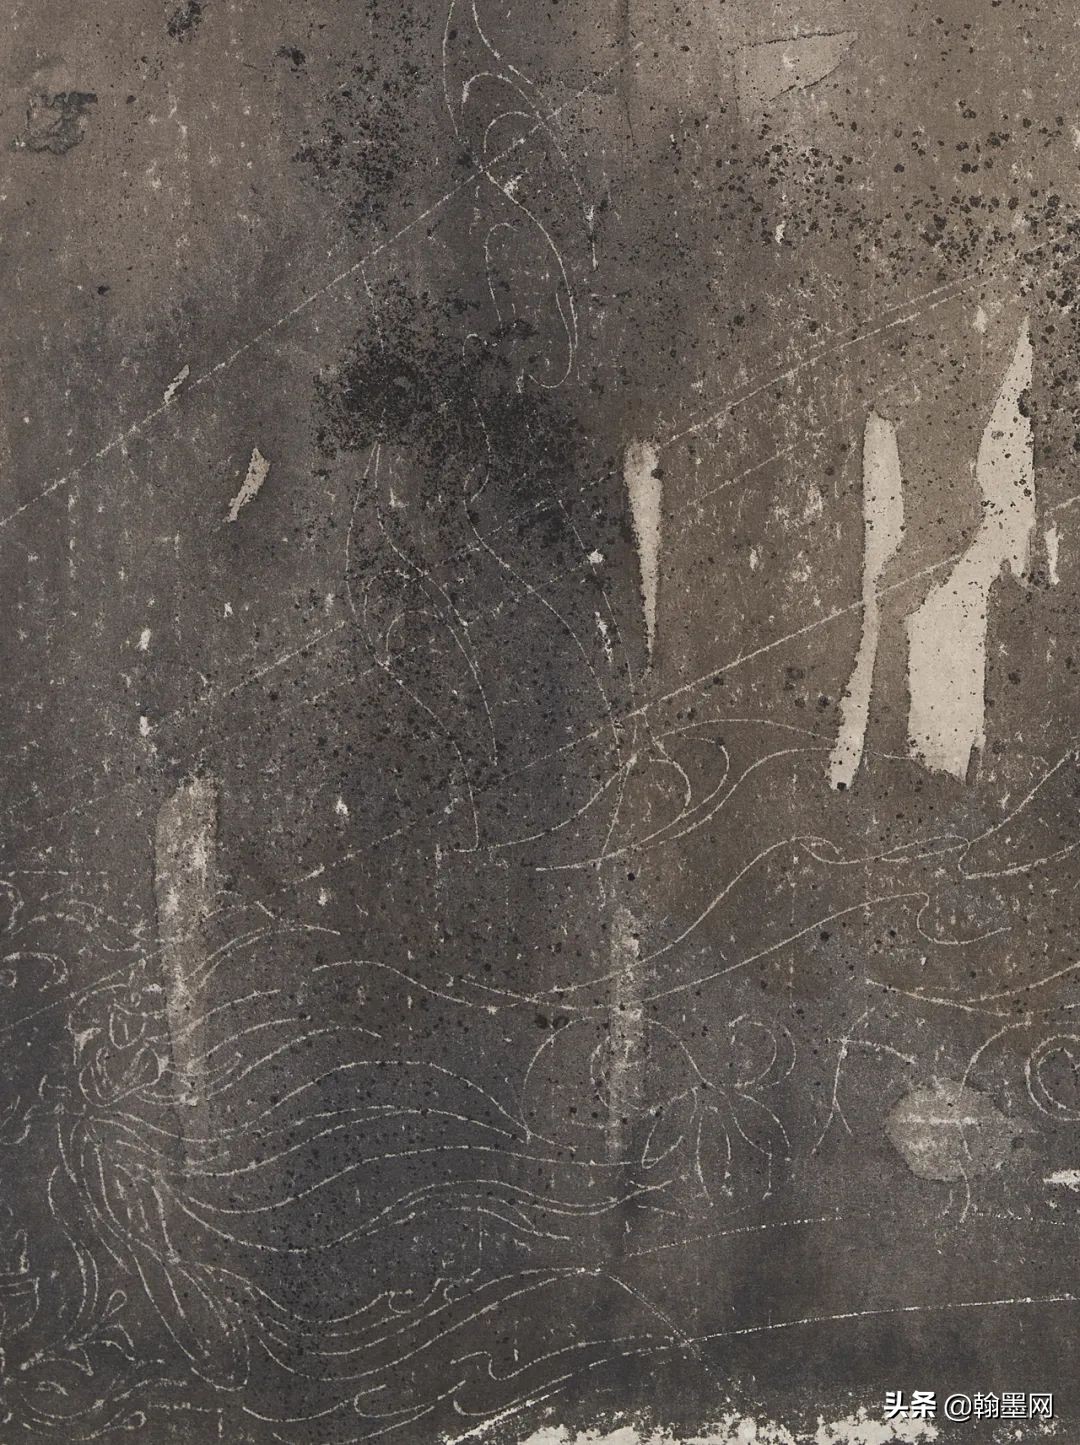 连·莲”--宋洋佛像水墨系列画作在香积寺·清心和雅展出